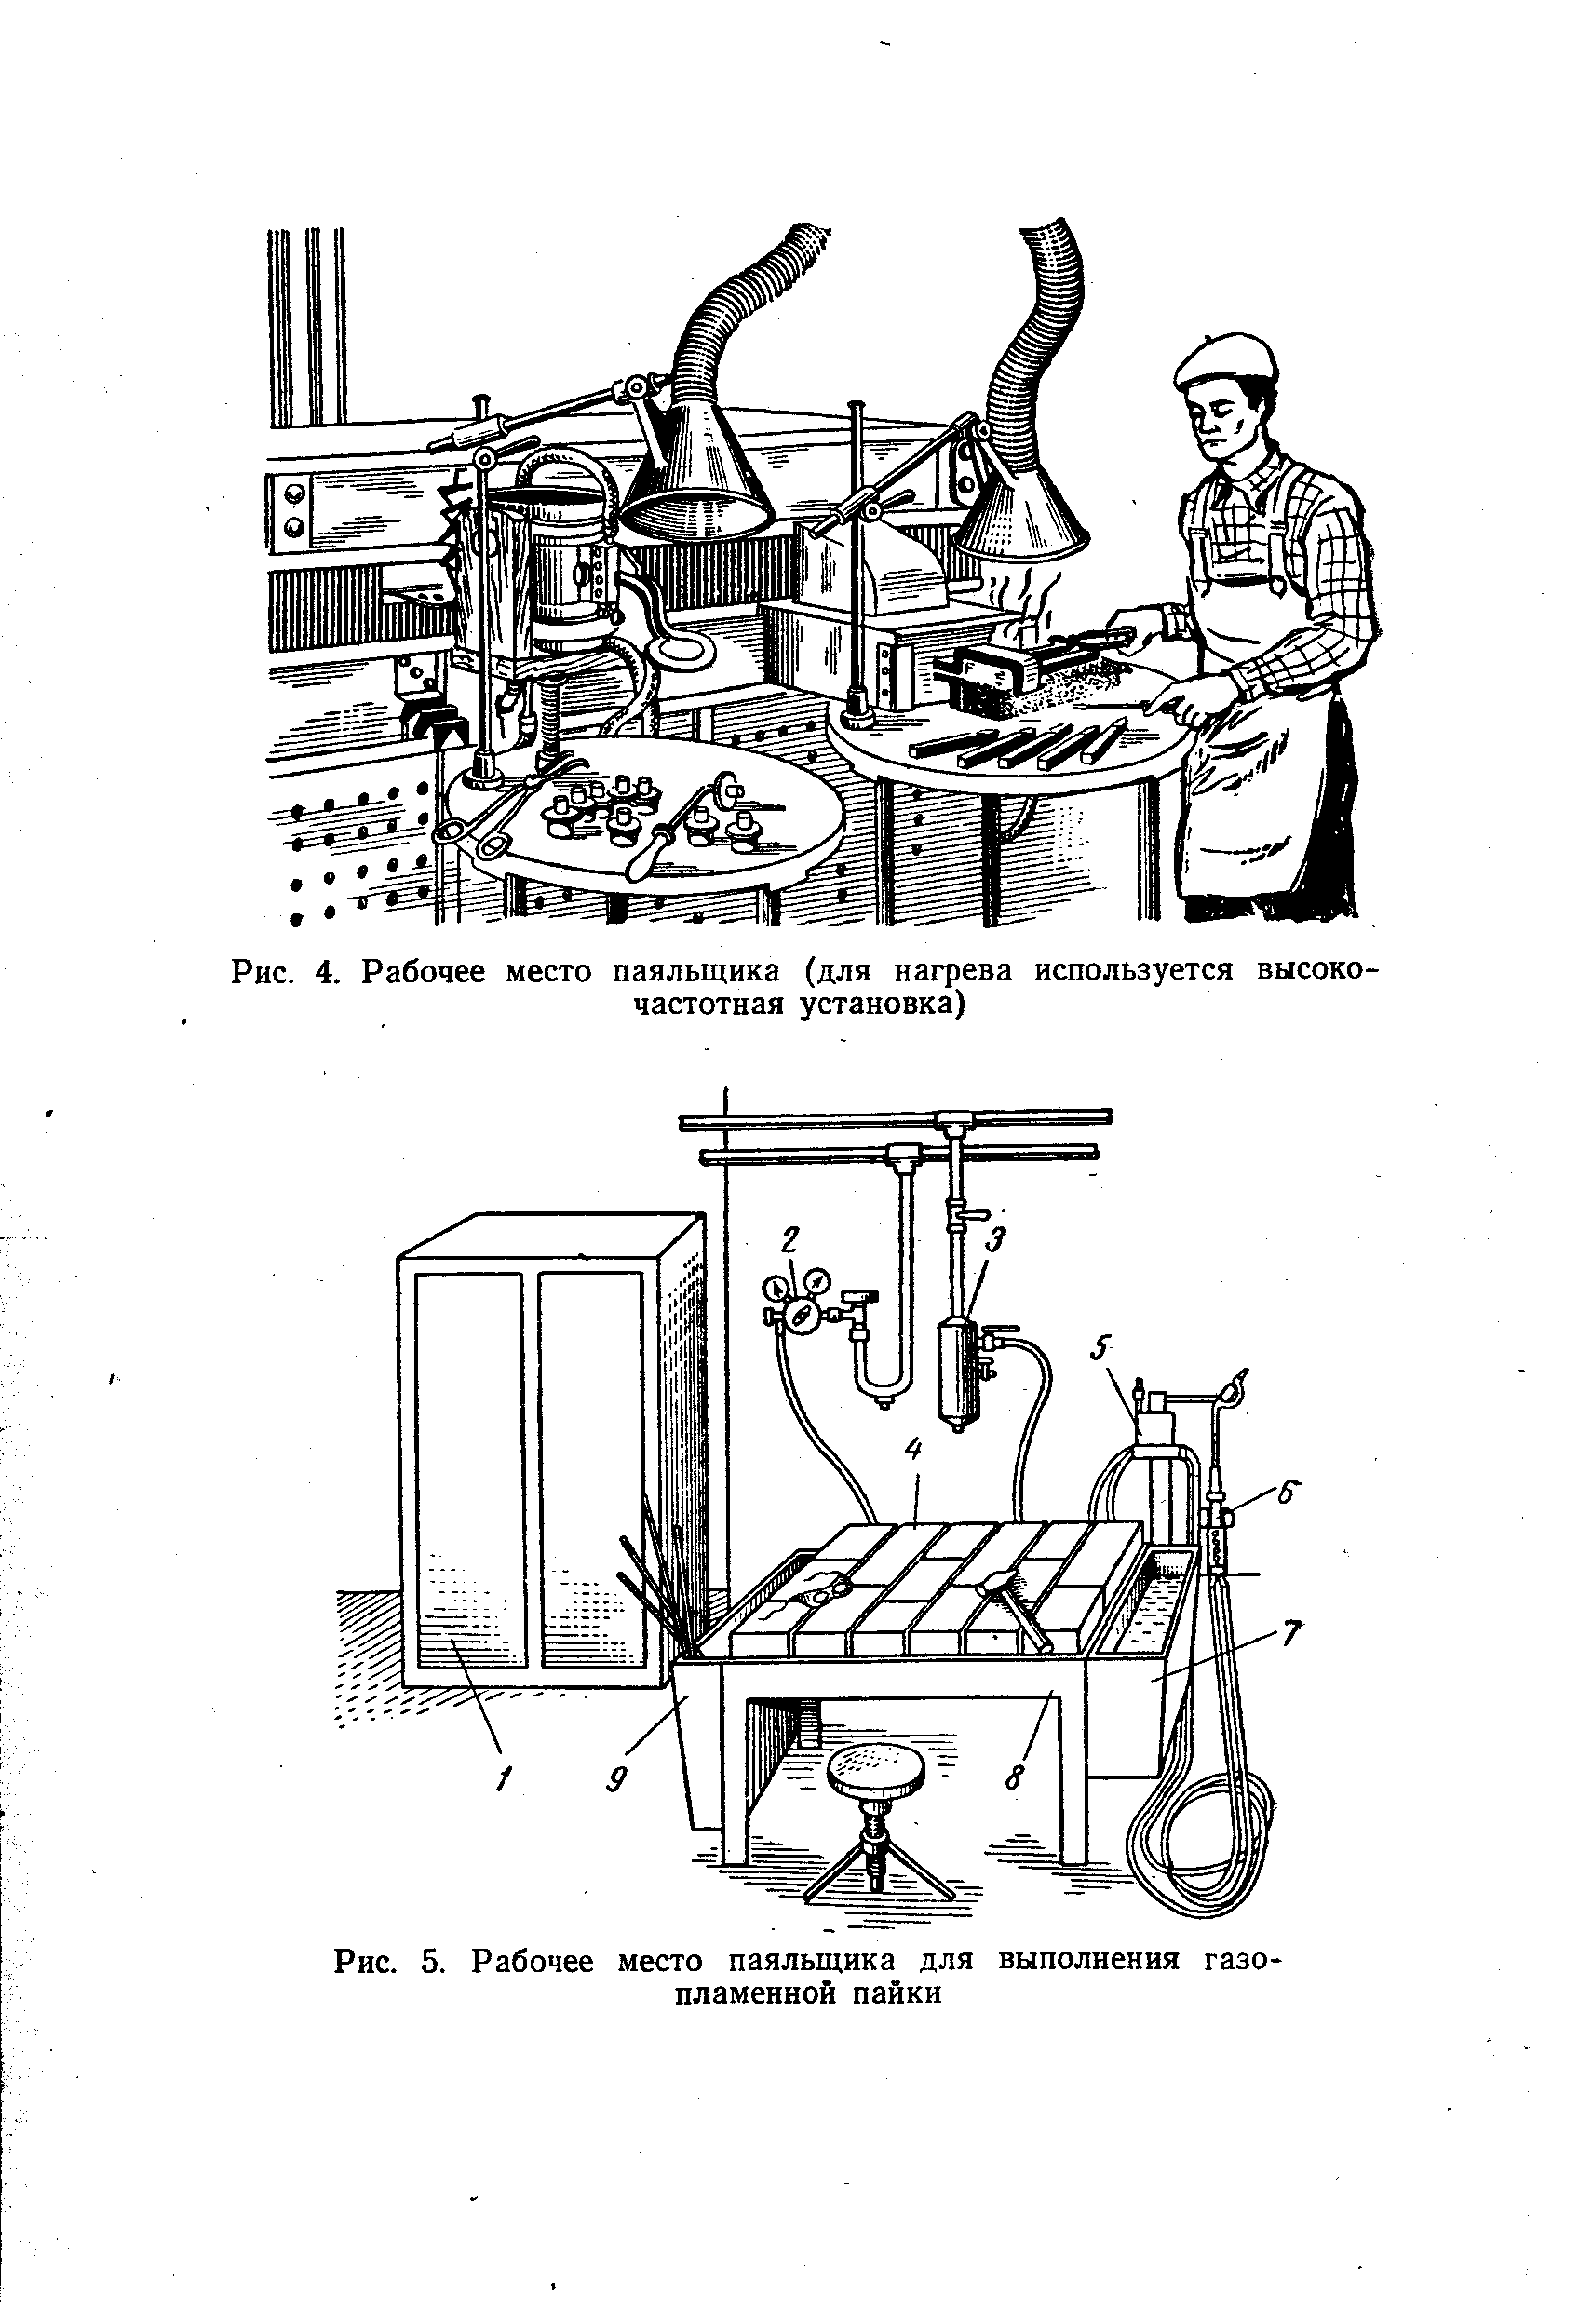 Рис. 4. Рабочее место паяльщика (для нагрева используется высокочастотная установка)
